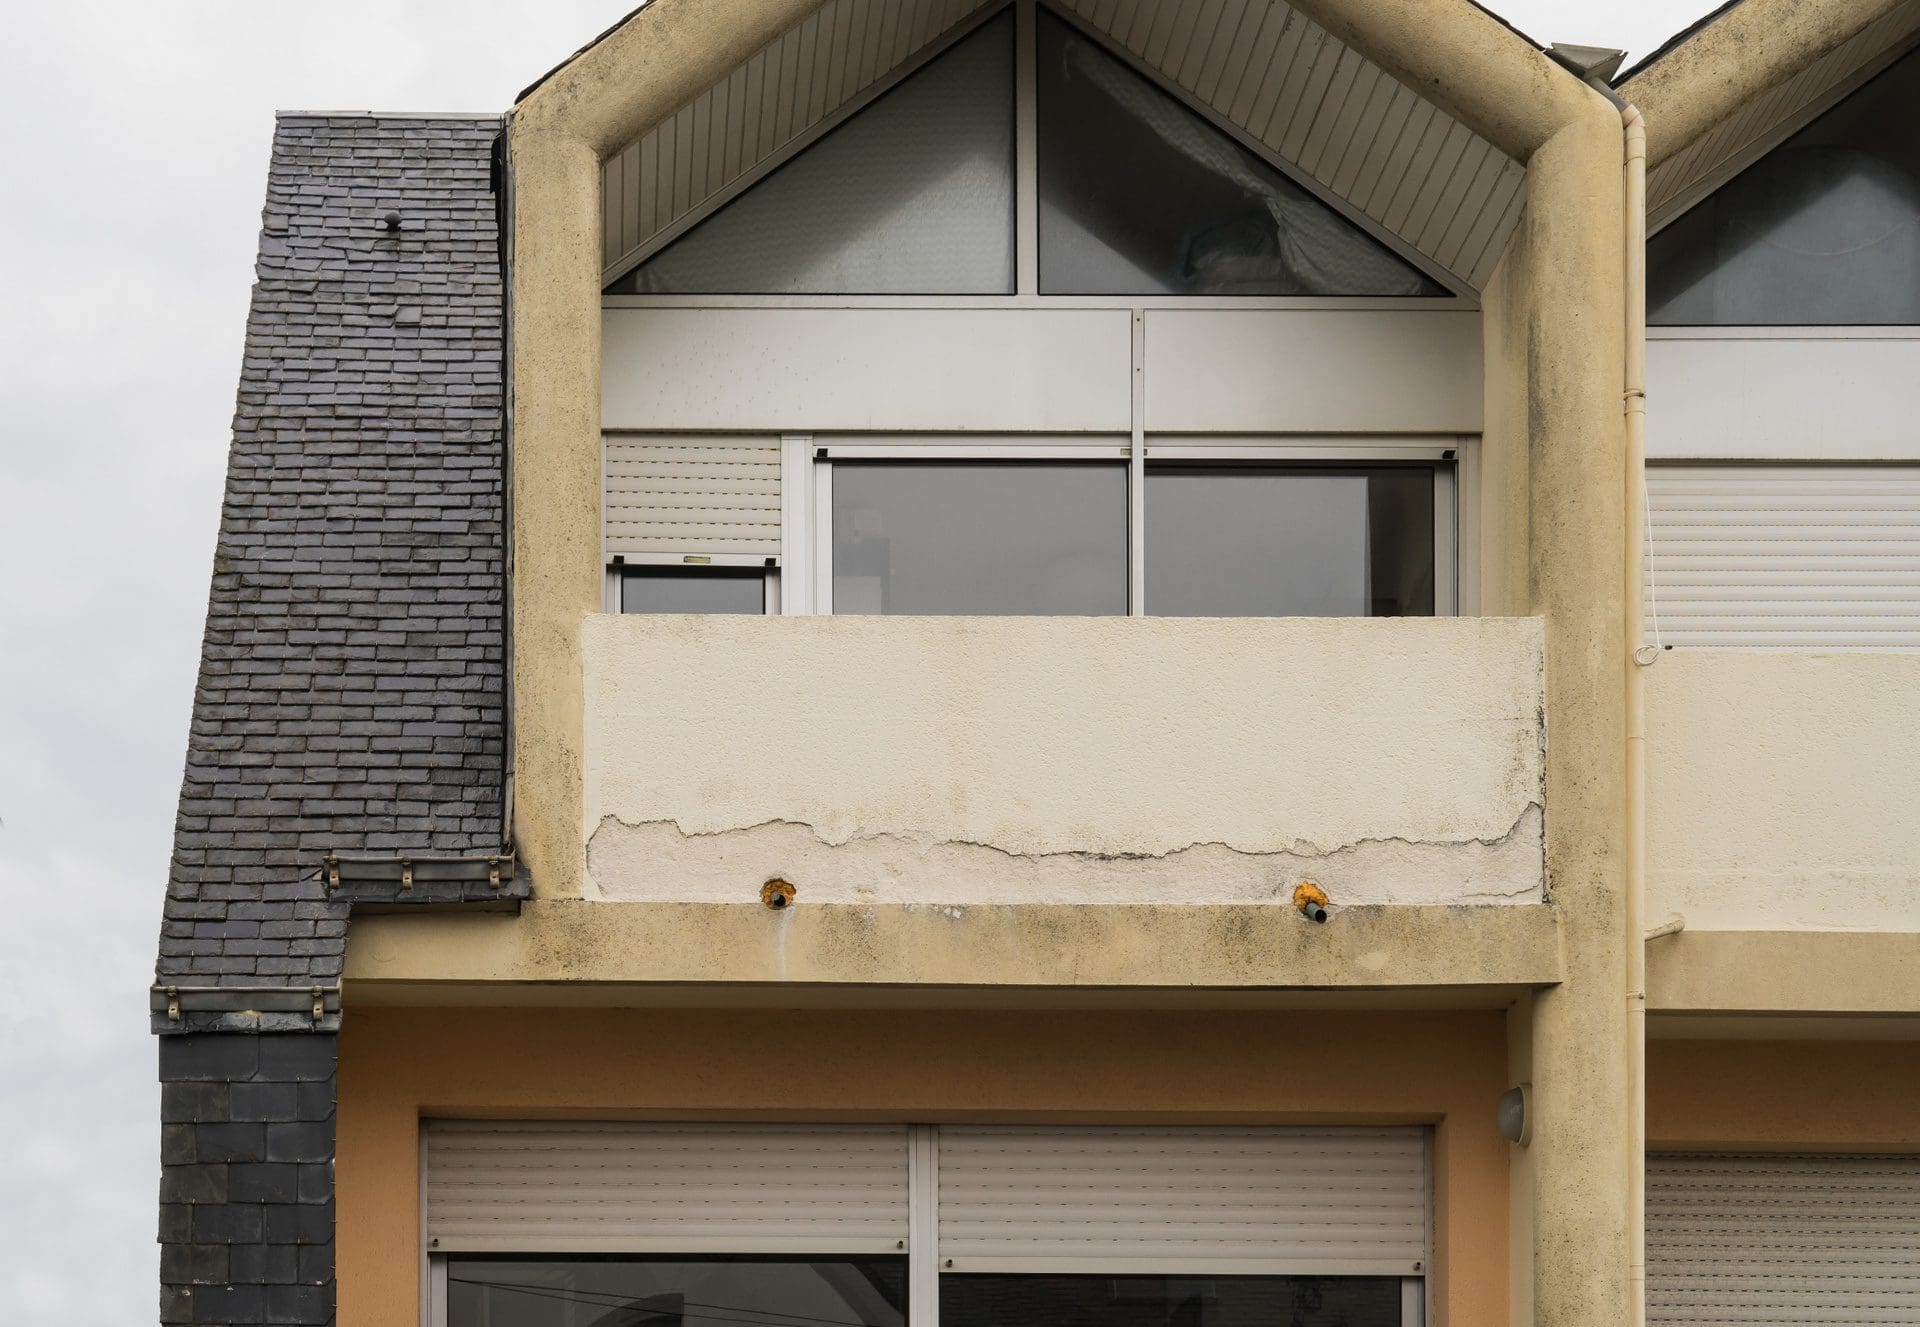 Baumangel oder Alterserscheinung? | Putz platzt ab, Balkon undicht - welcher Handwerker repariert die verschiedenen Schäden?! (© Fotoschlick / stock.adobe.com)